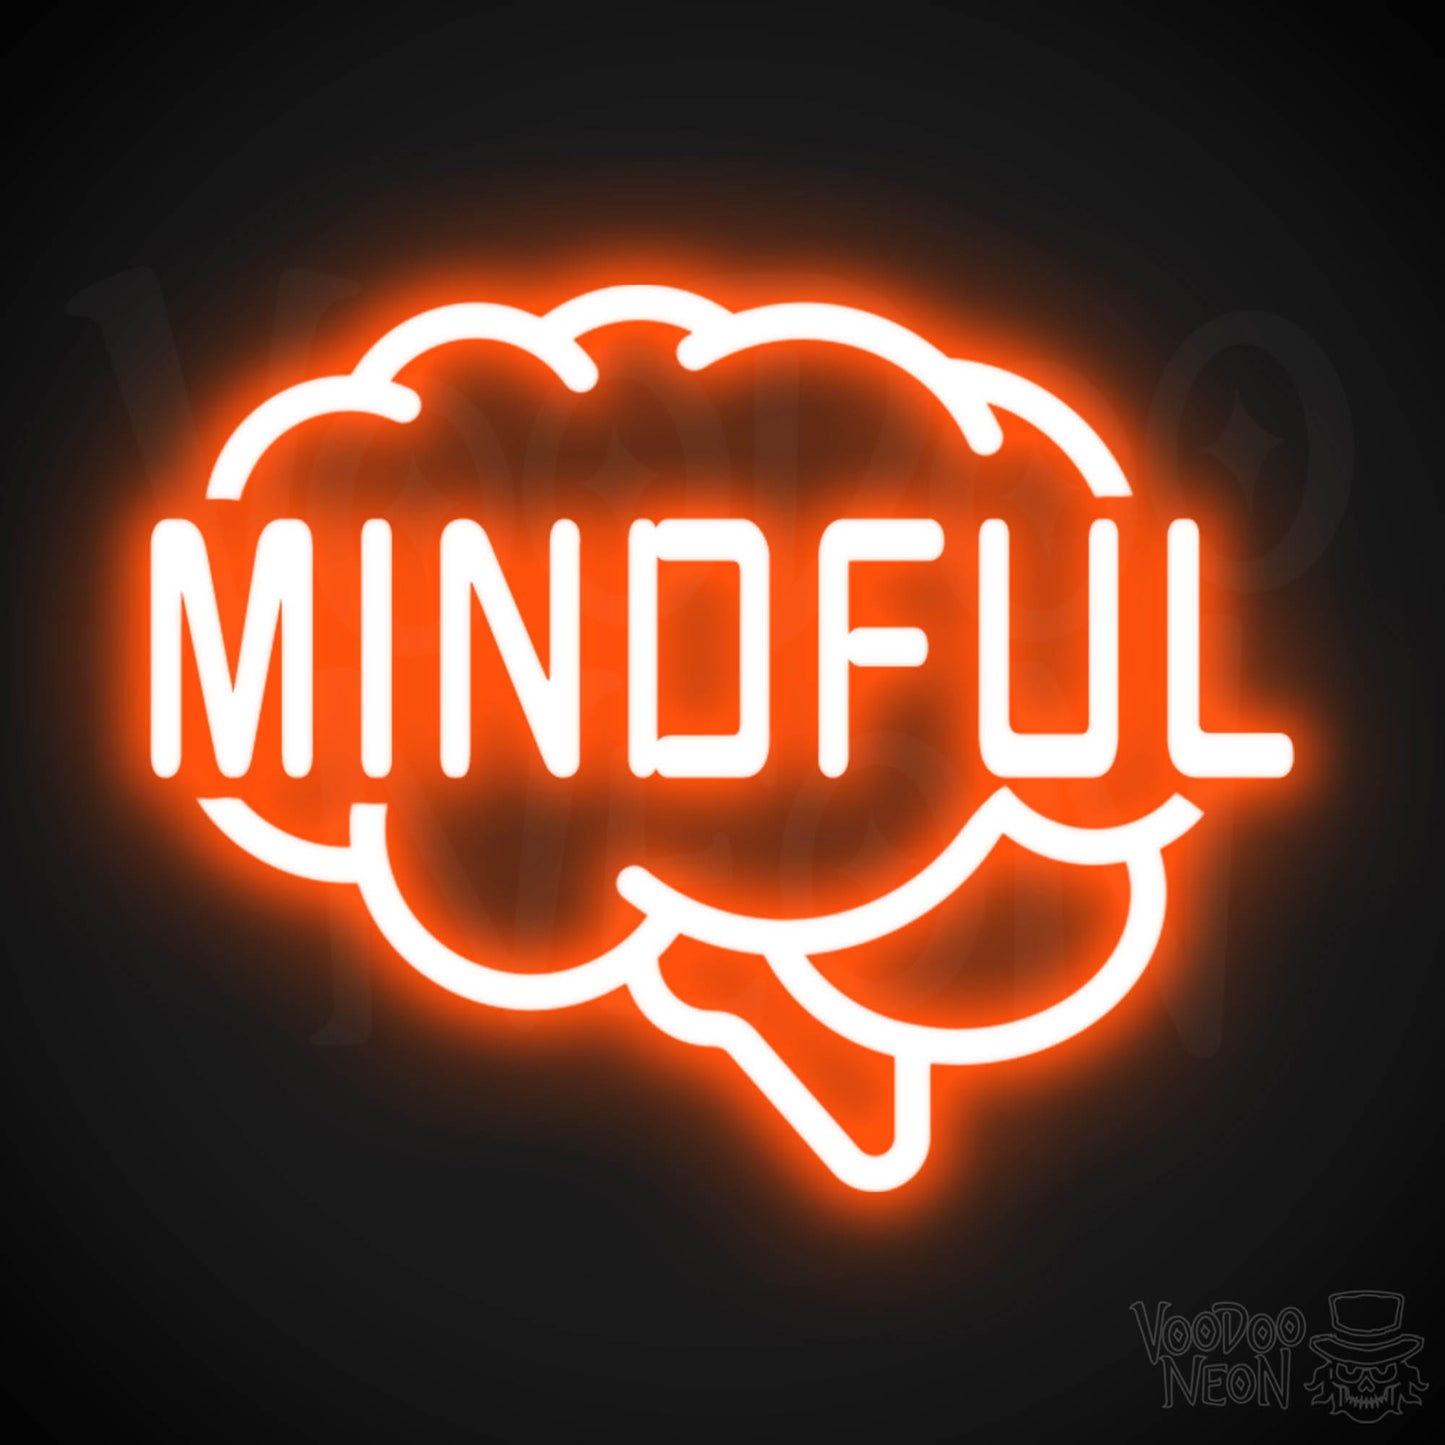 Mindful Neon Sign - Neon Mindful Sign - LED Sign - Color Orange